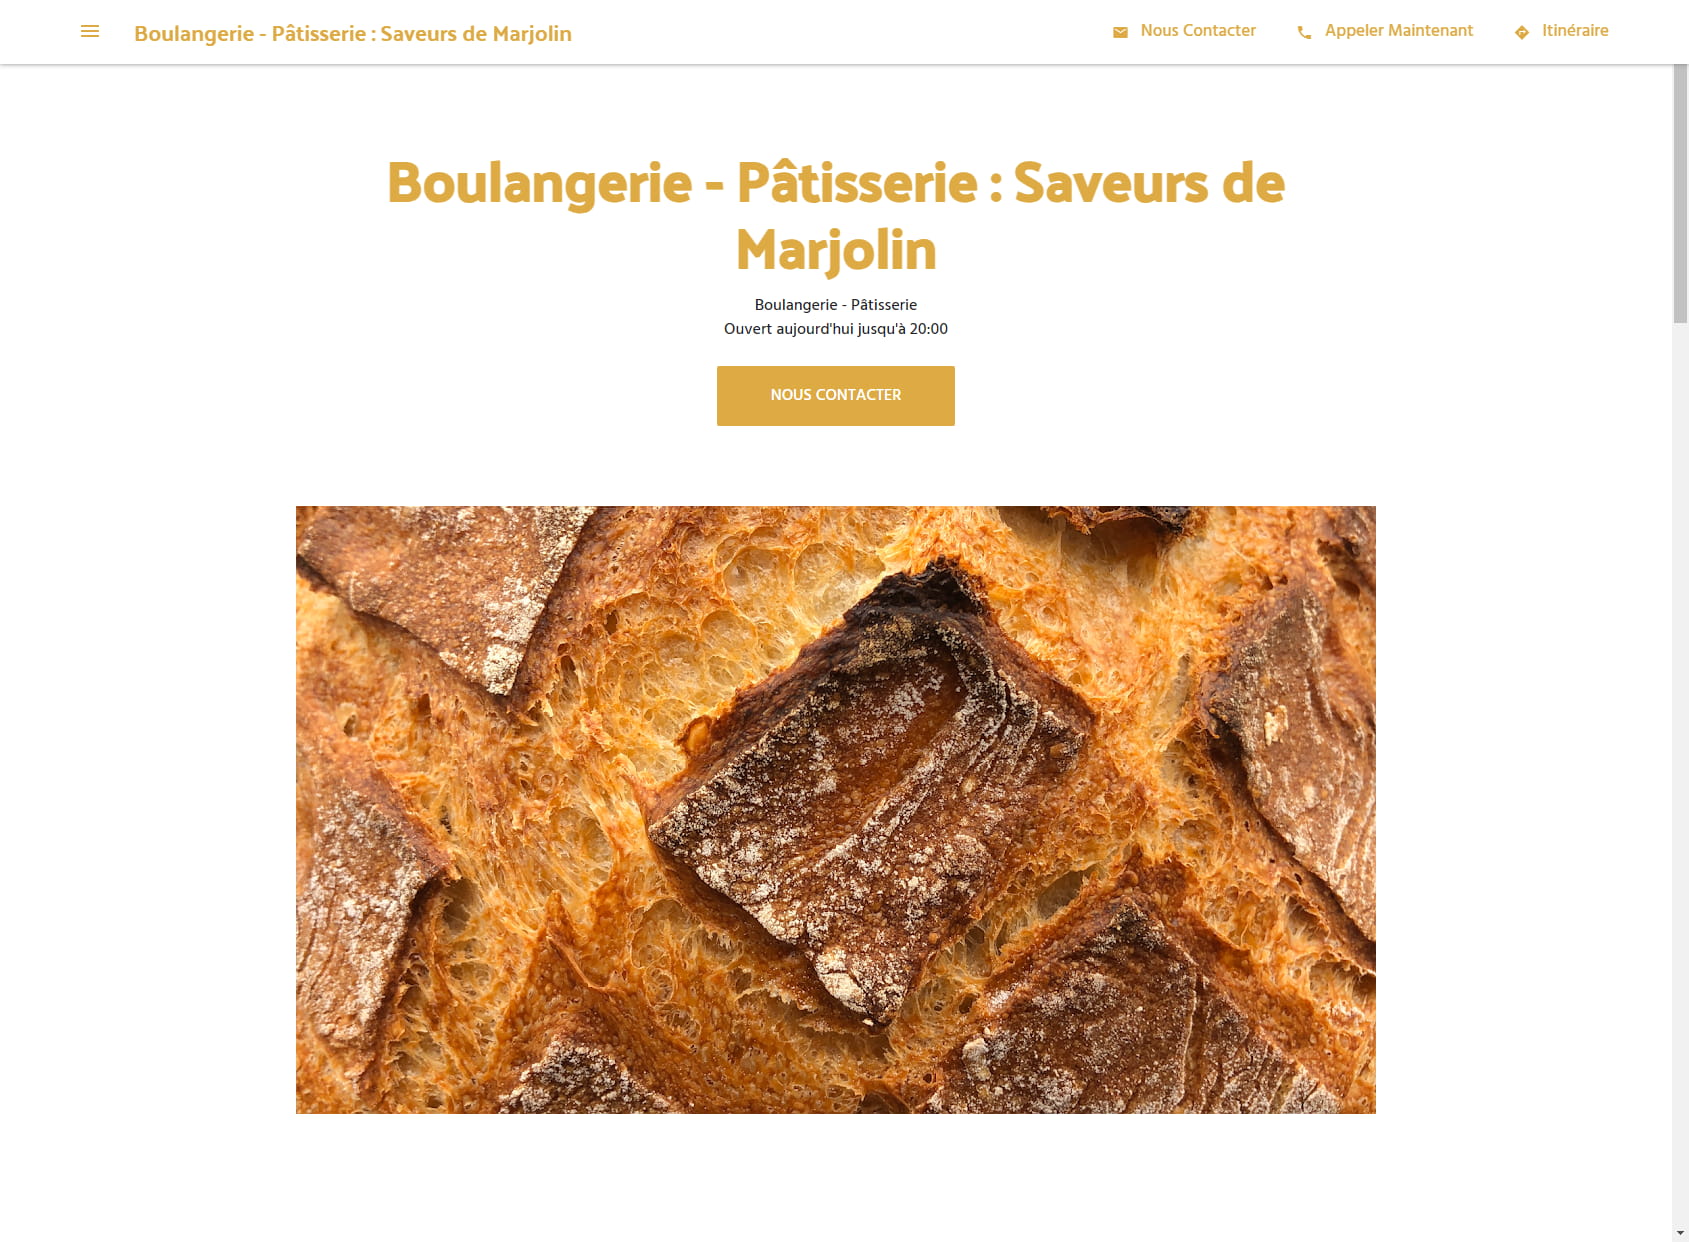 Boulangerie - Pâtisserie : Saveurs de Marjolin